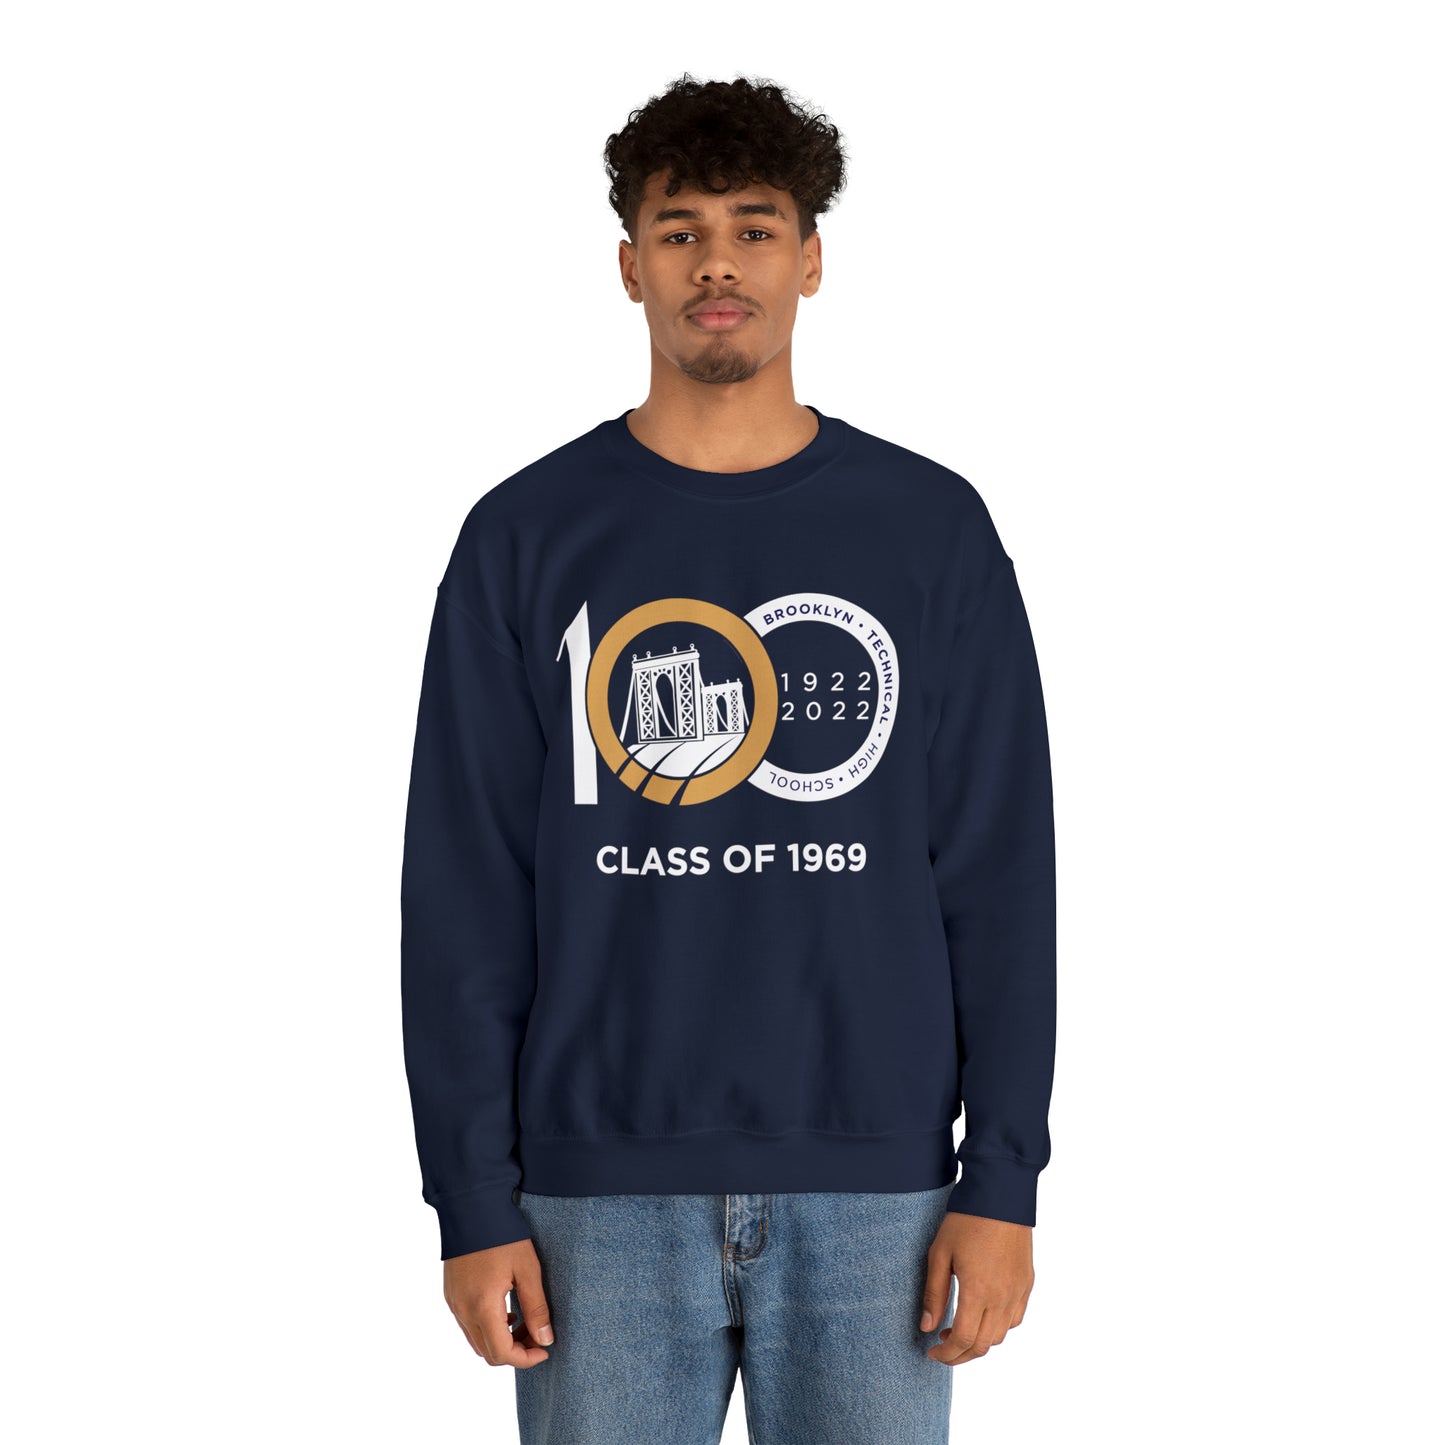 Centennial - Men's Heavy Blend Crewneck Sweatshirt - Class Of 1969